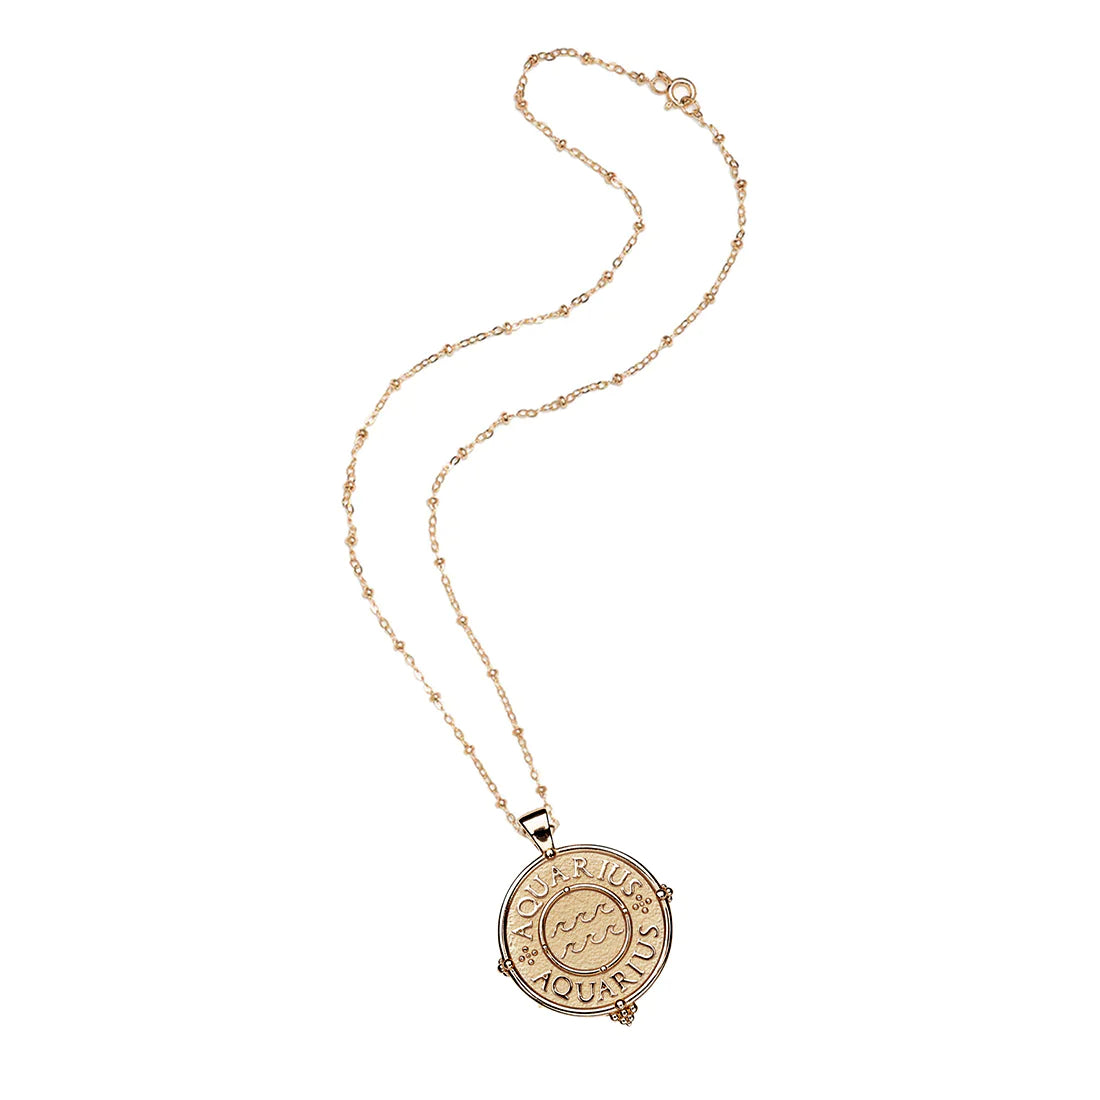 mersea colab Aquarius zodiac pendant with chain